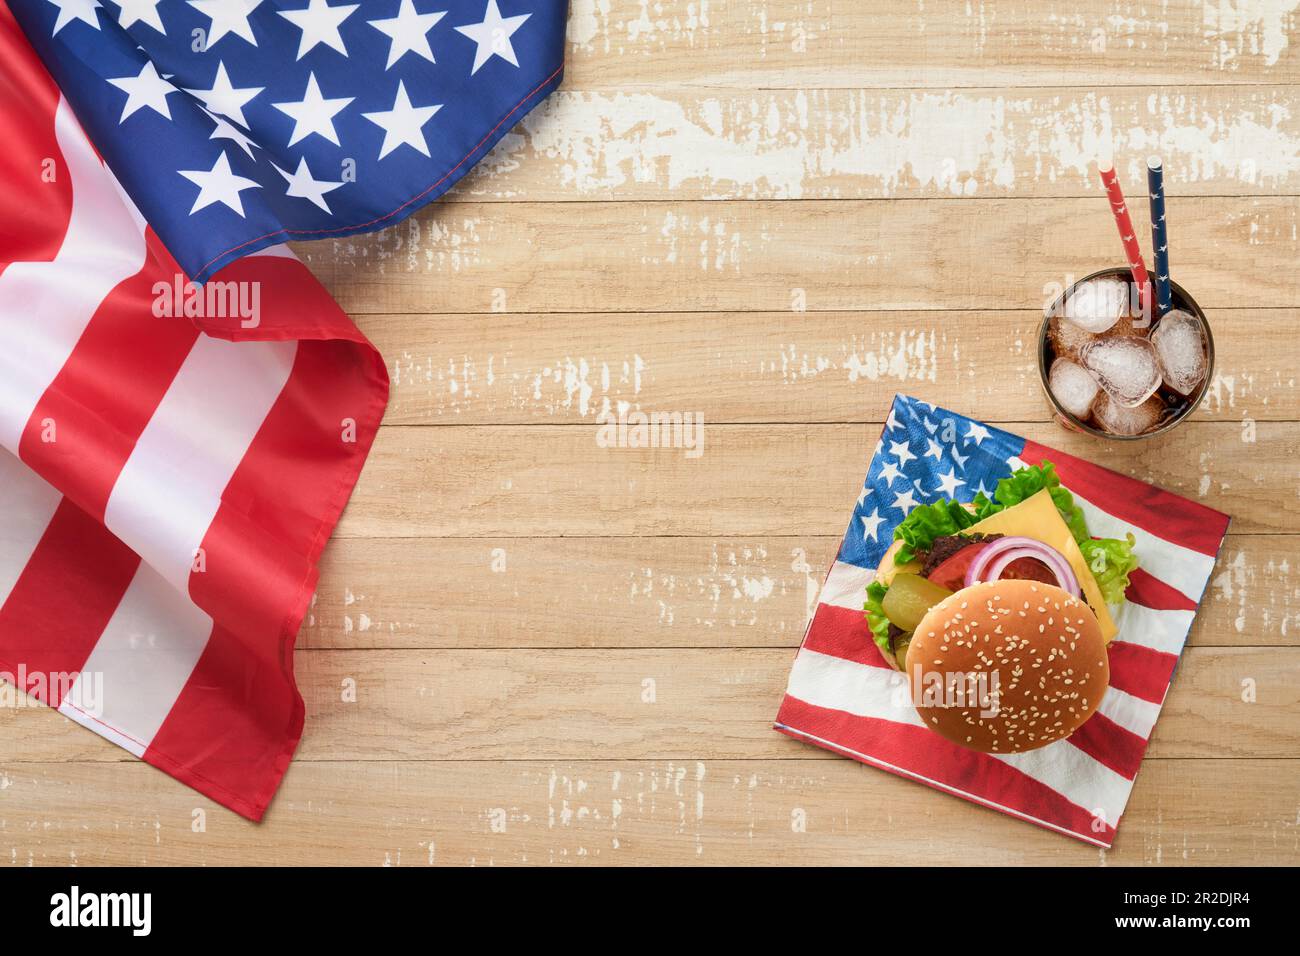 4th de juillet American Independence Day cuisine traditionnelle de pique-nique. Hamburger américain et cocktail, drapeaux américains et symboles de l'holida de pique-nique patriotique des États-Unis Banque D'Images